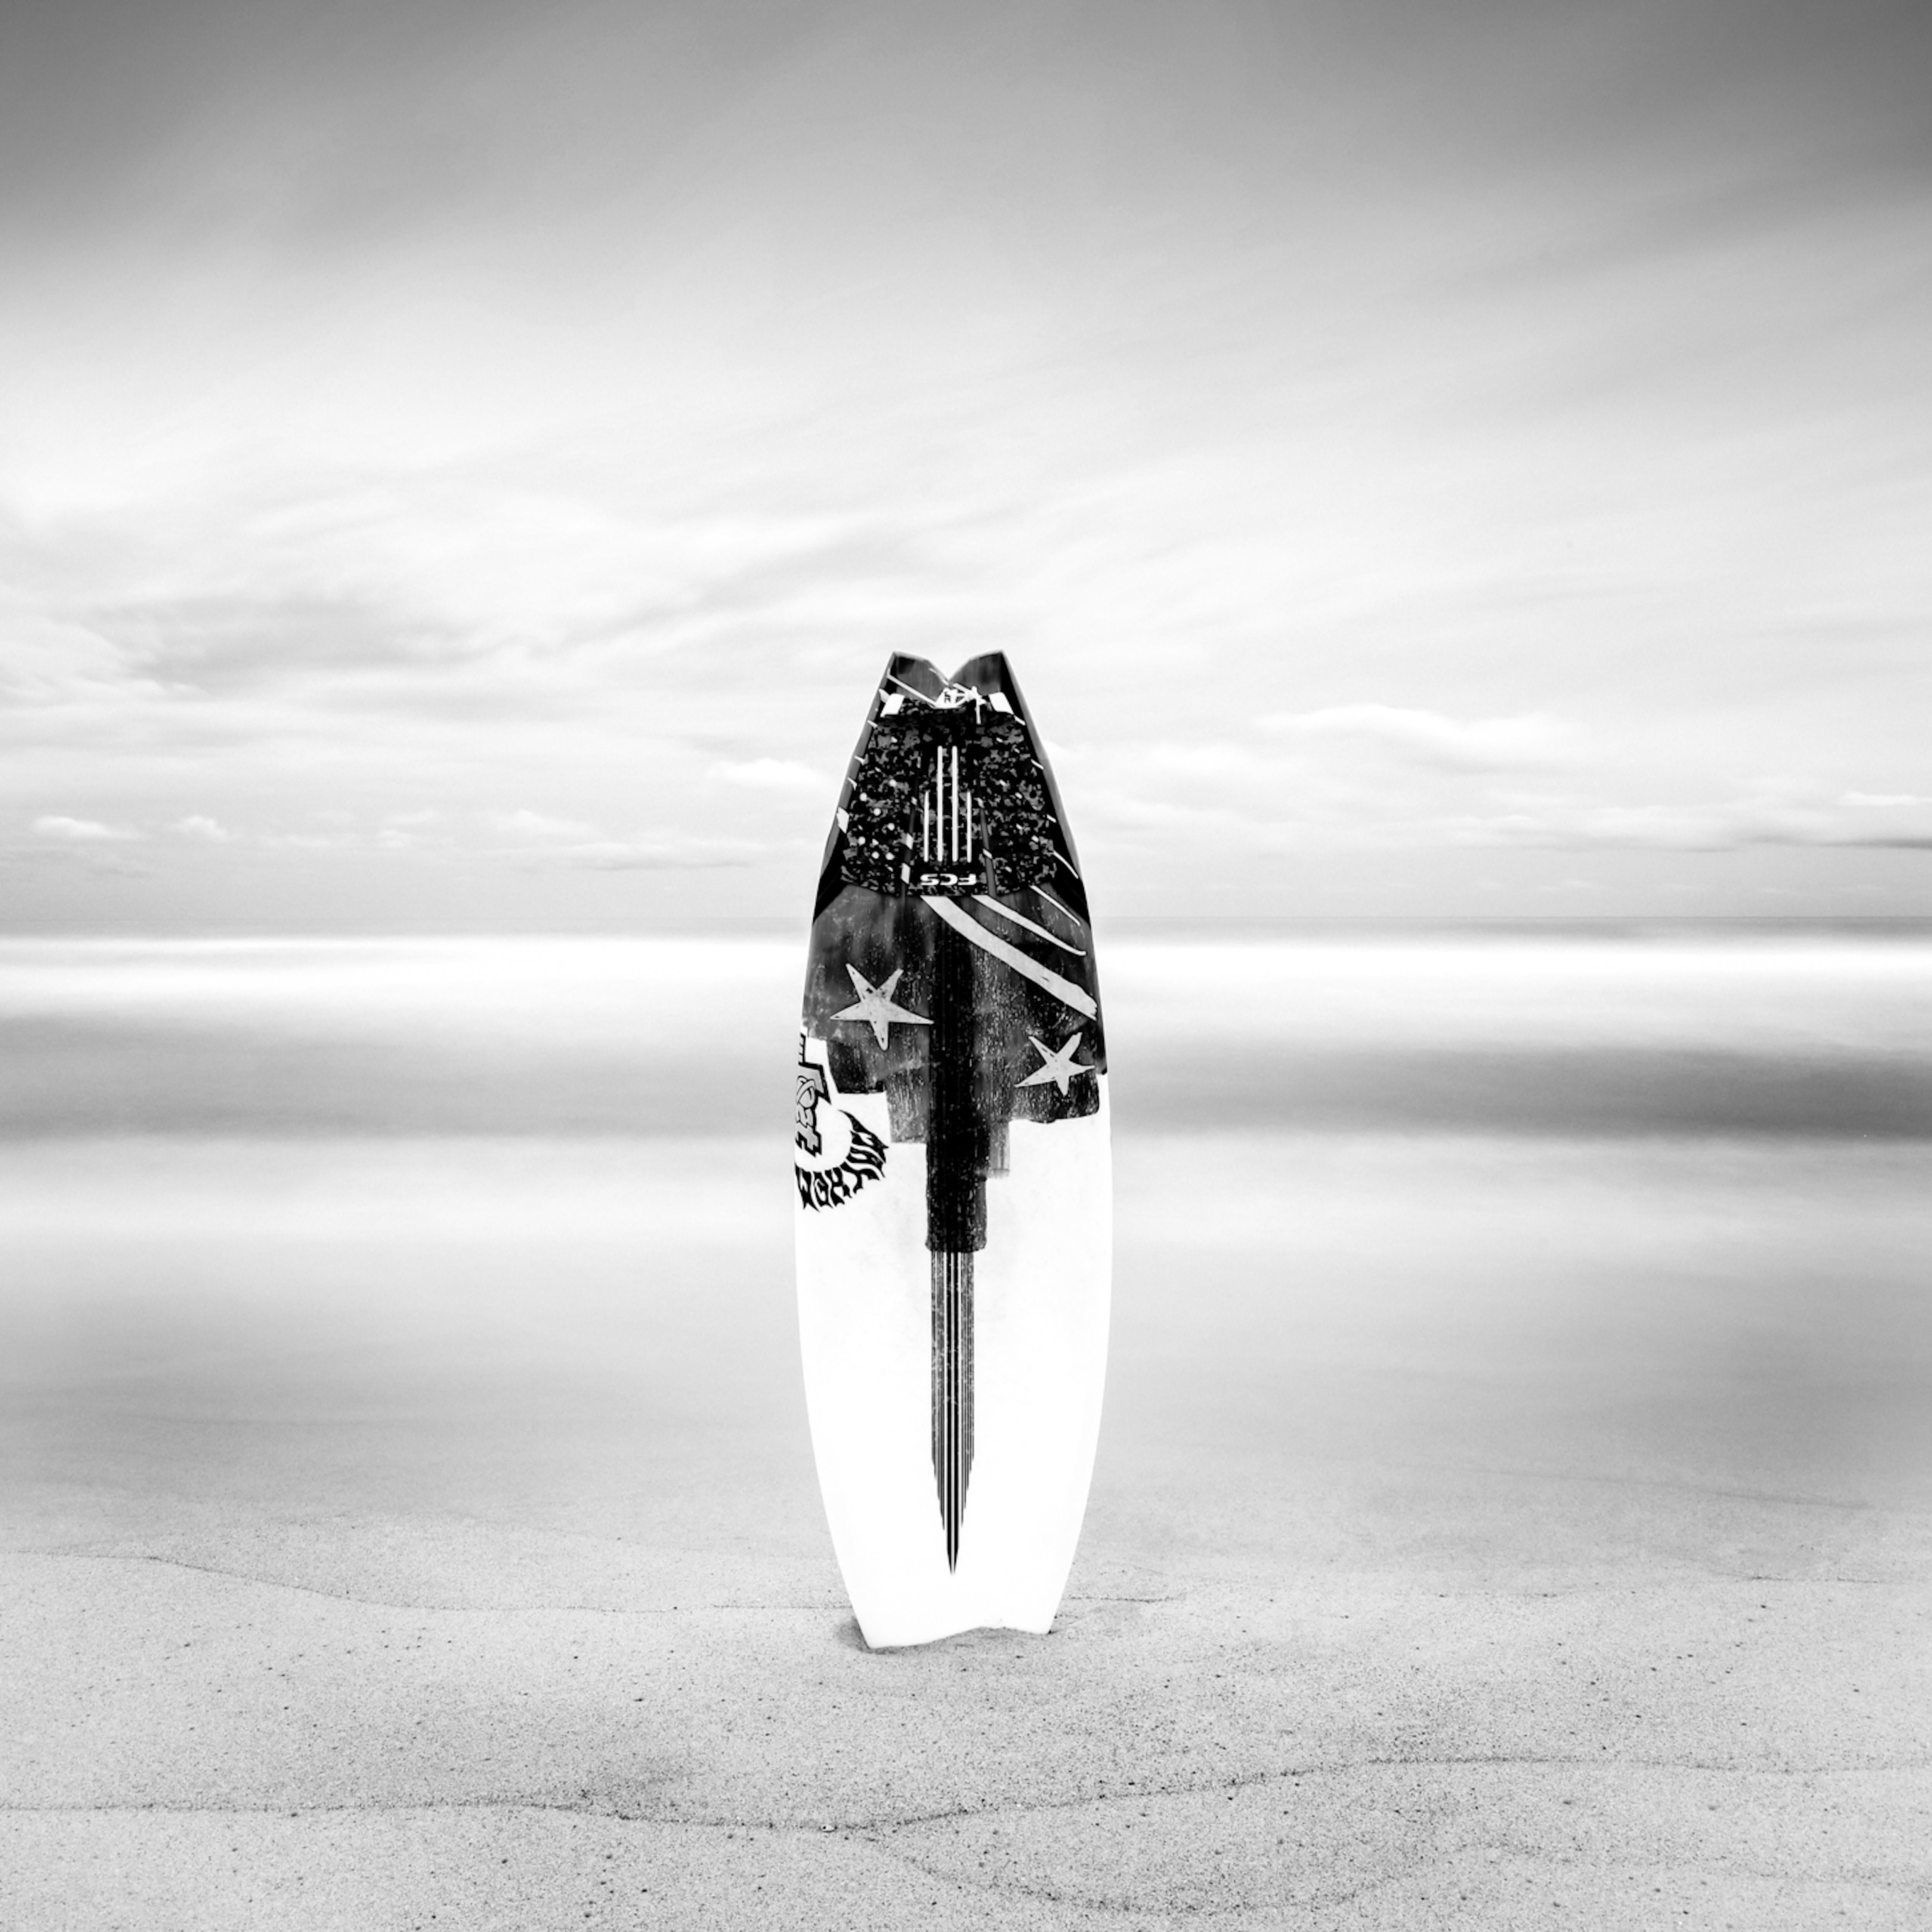 Surfboard at White Sands - Encadré - Edition limitée à 10 exemplaires